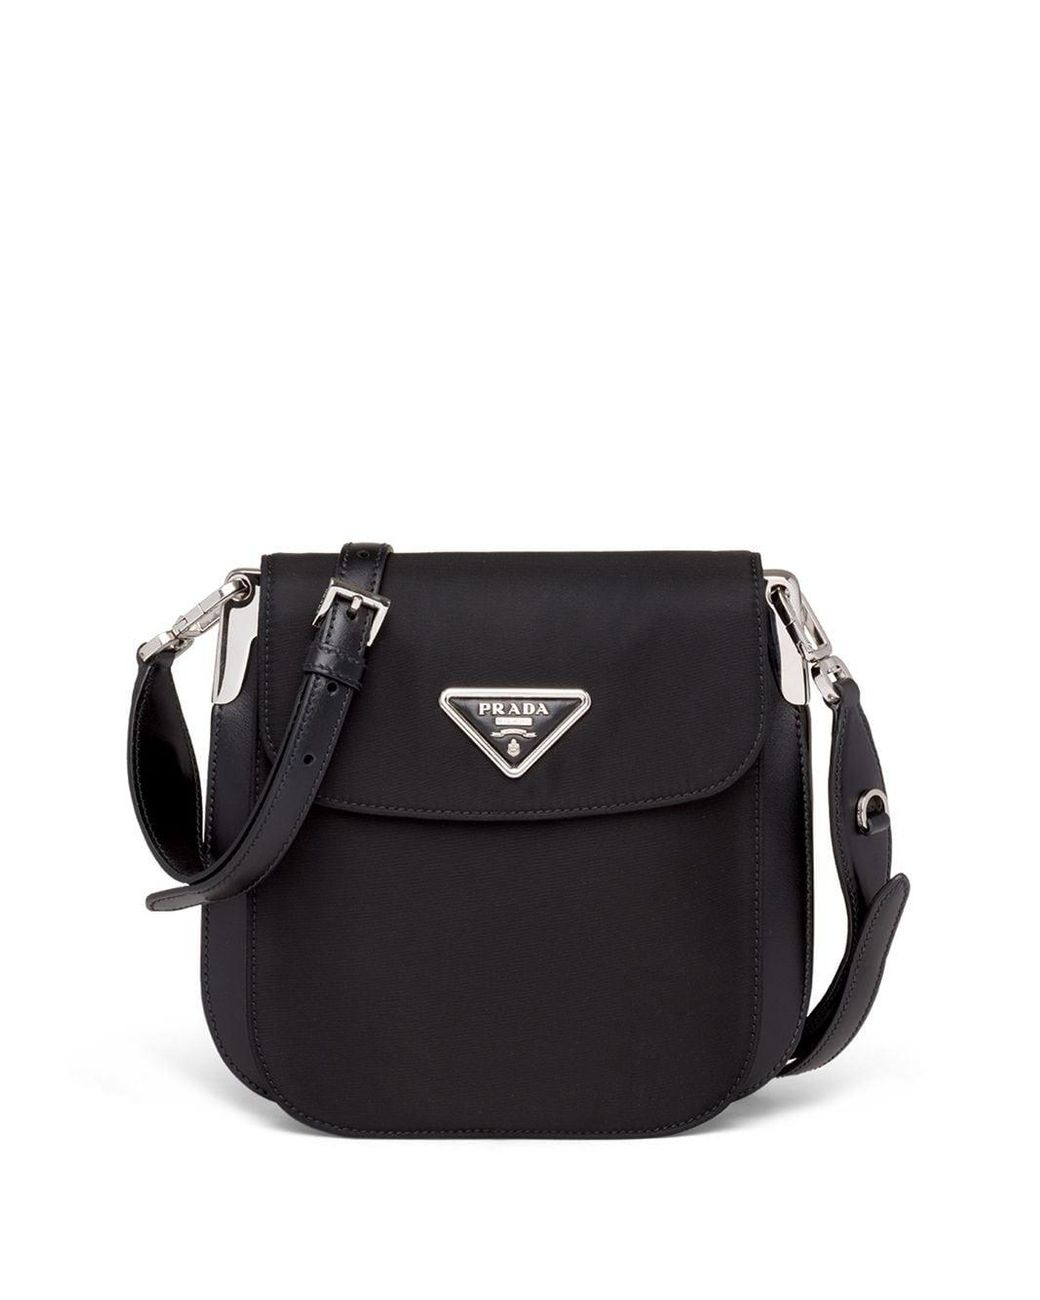 Prada Leather Logo Plaque Shoulder Bag in Black - Lyst